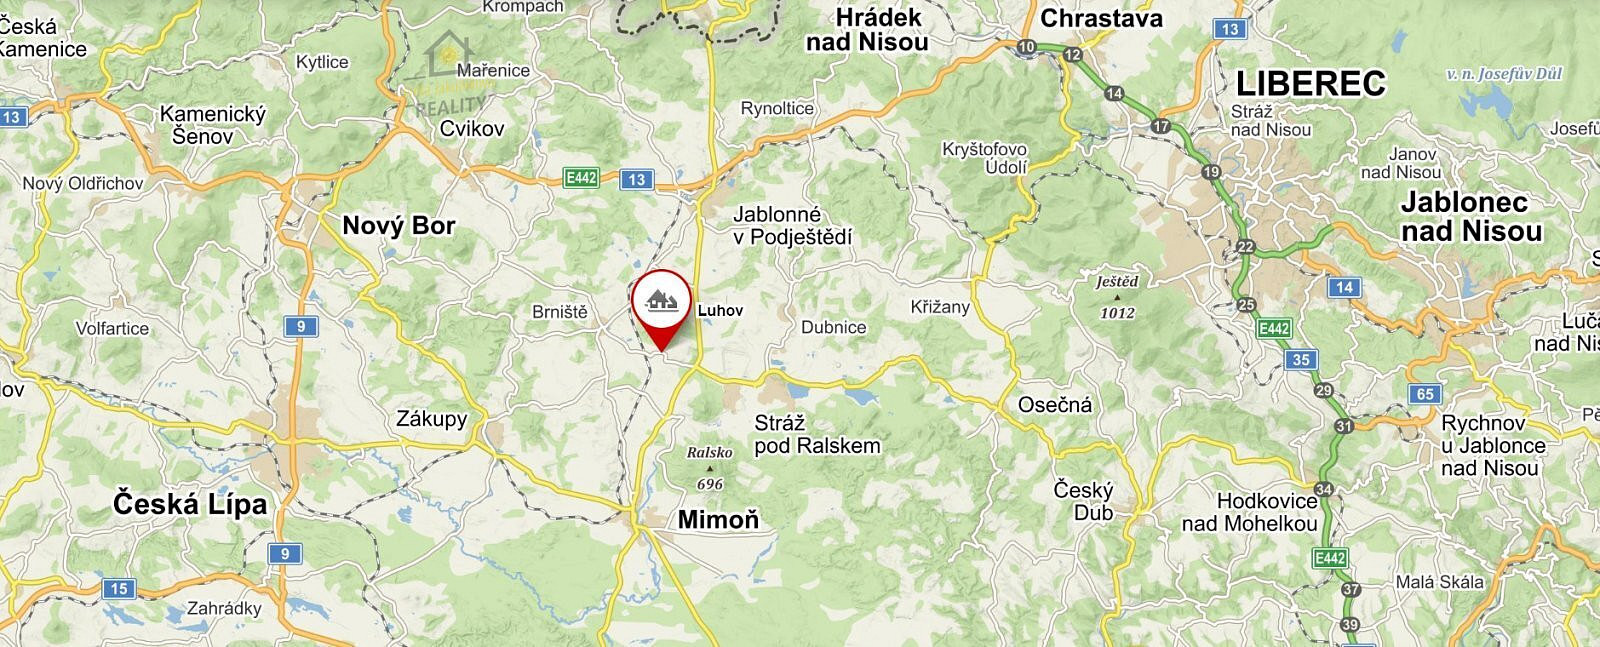 Brniště - Luhov, okres Česká Lípa